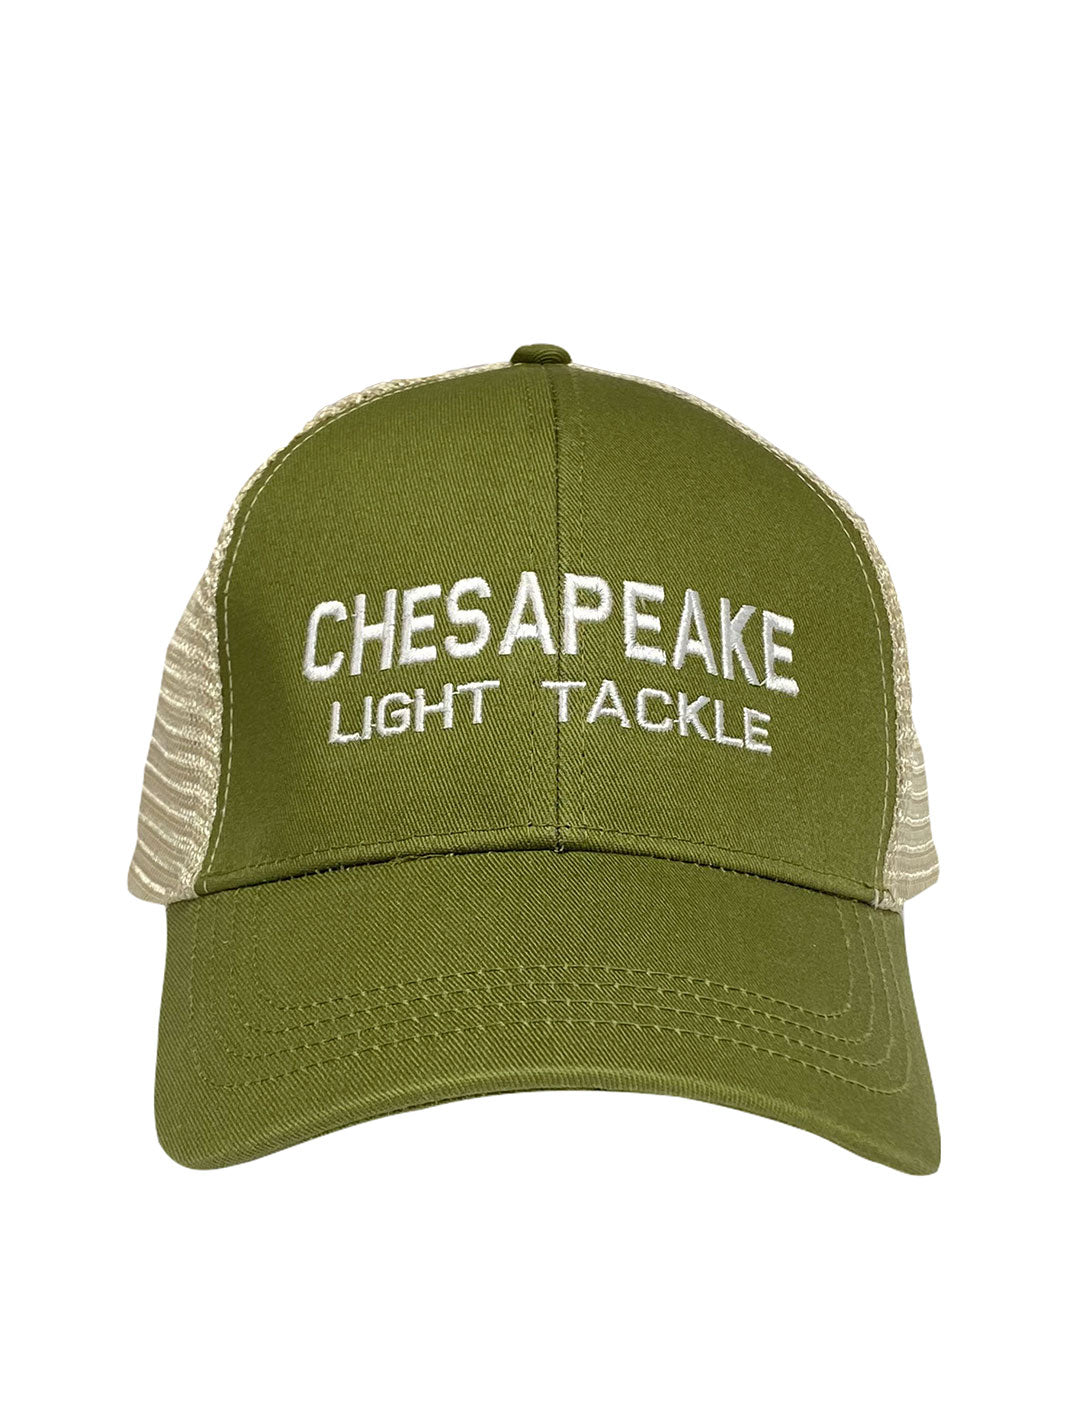 CLT Moss Green Mesh Trucker Hat